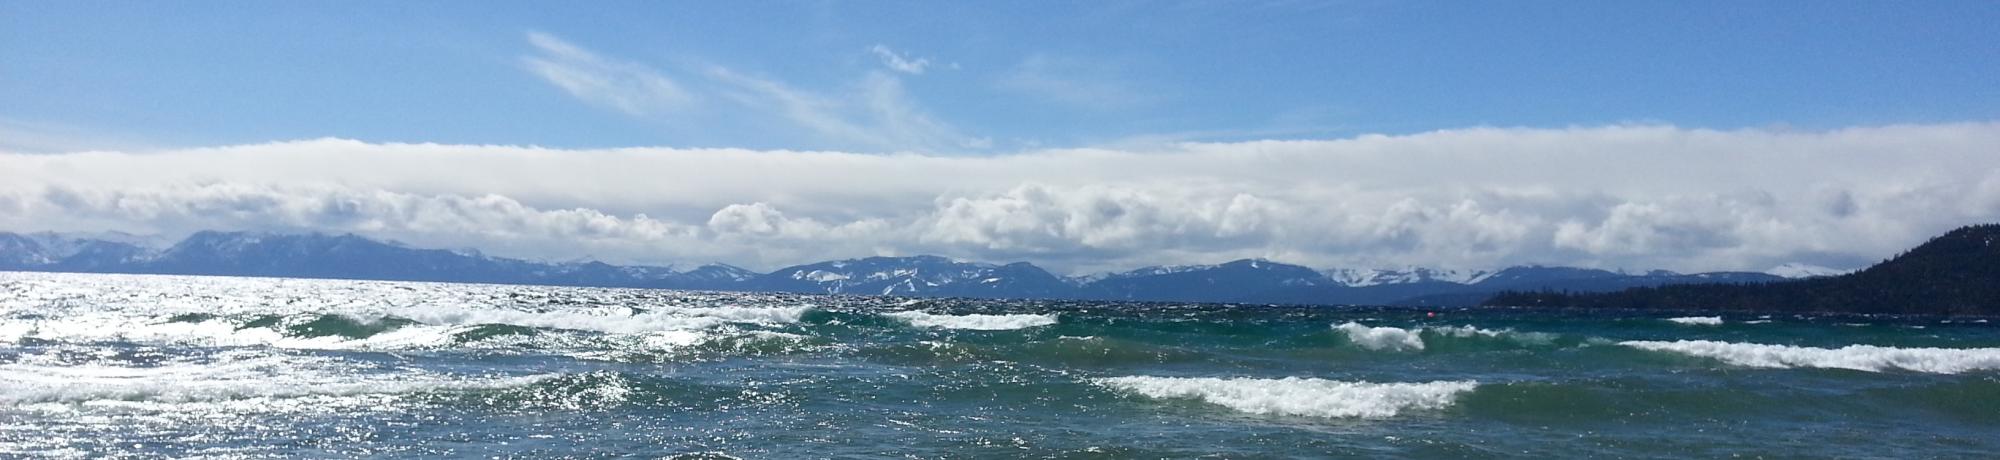 Rough waters on Tahoe